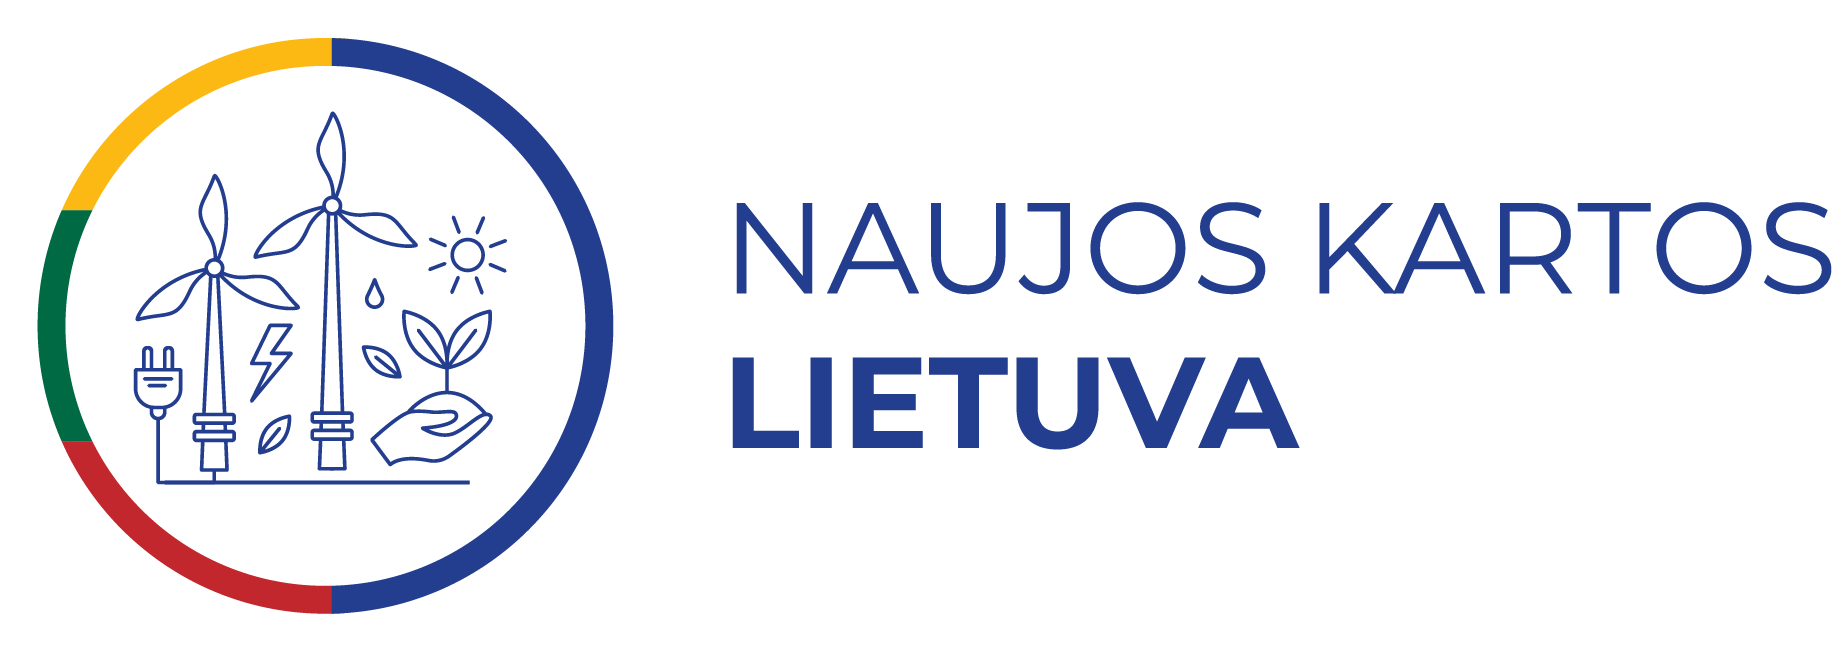 naujos kartos Lietuva logo